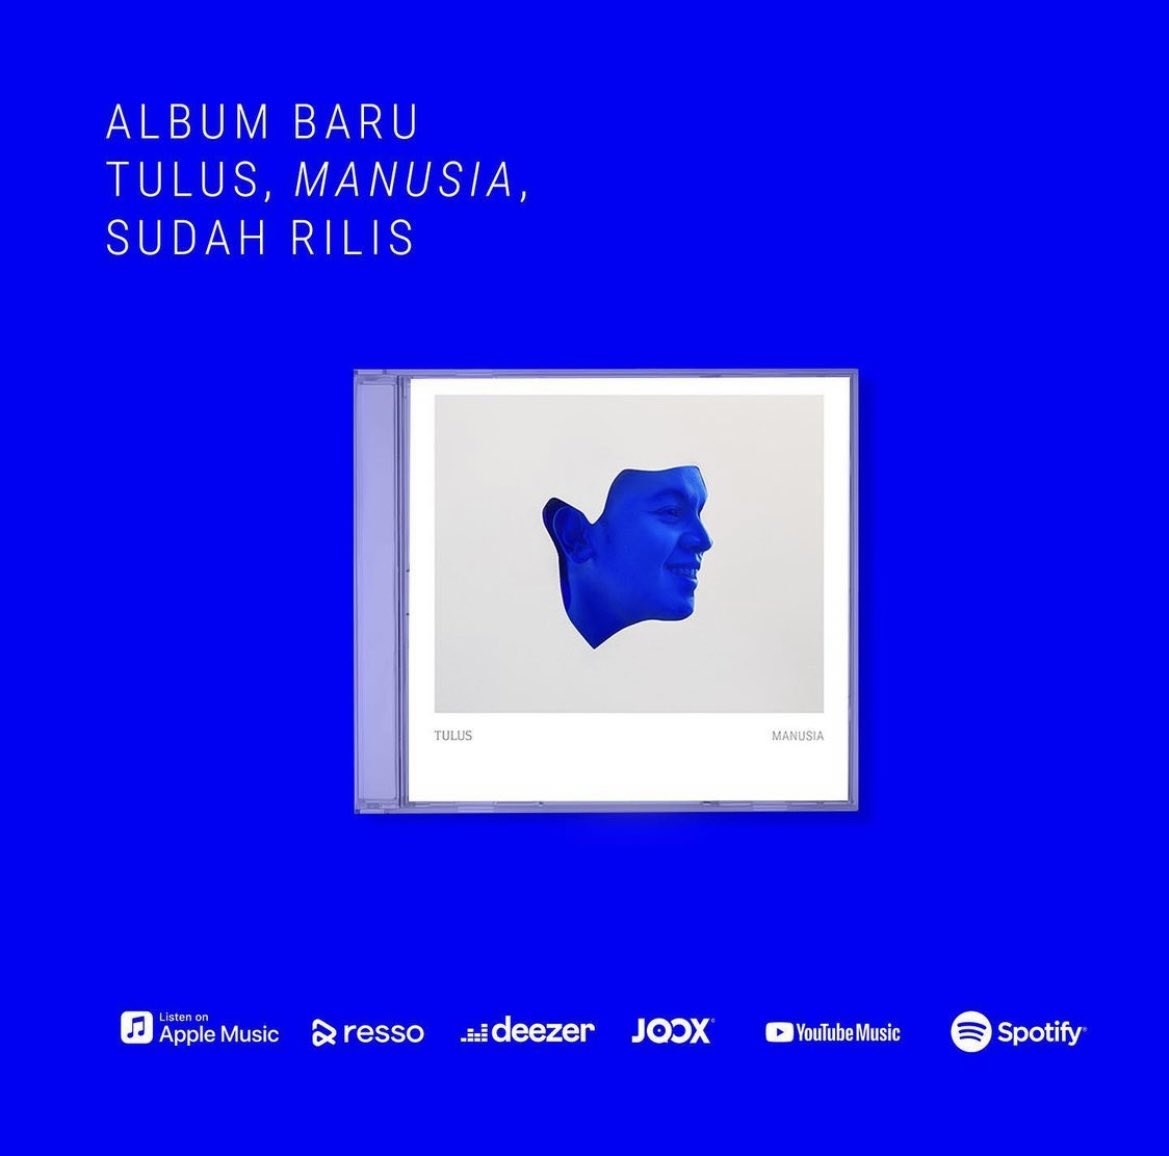 Album baru Tulus, “Manusia”, sudah dapat didengarkan di seluruh toko musik digital.

#TulusManusia